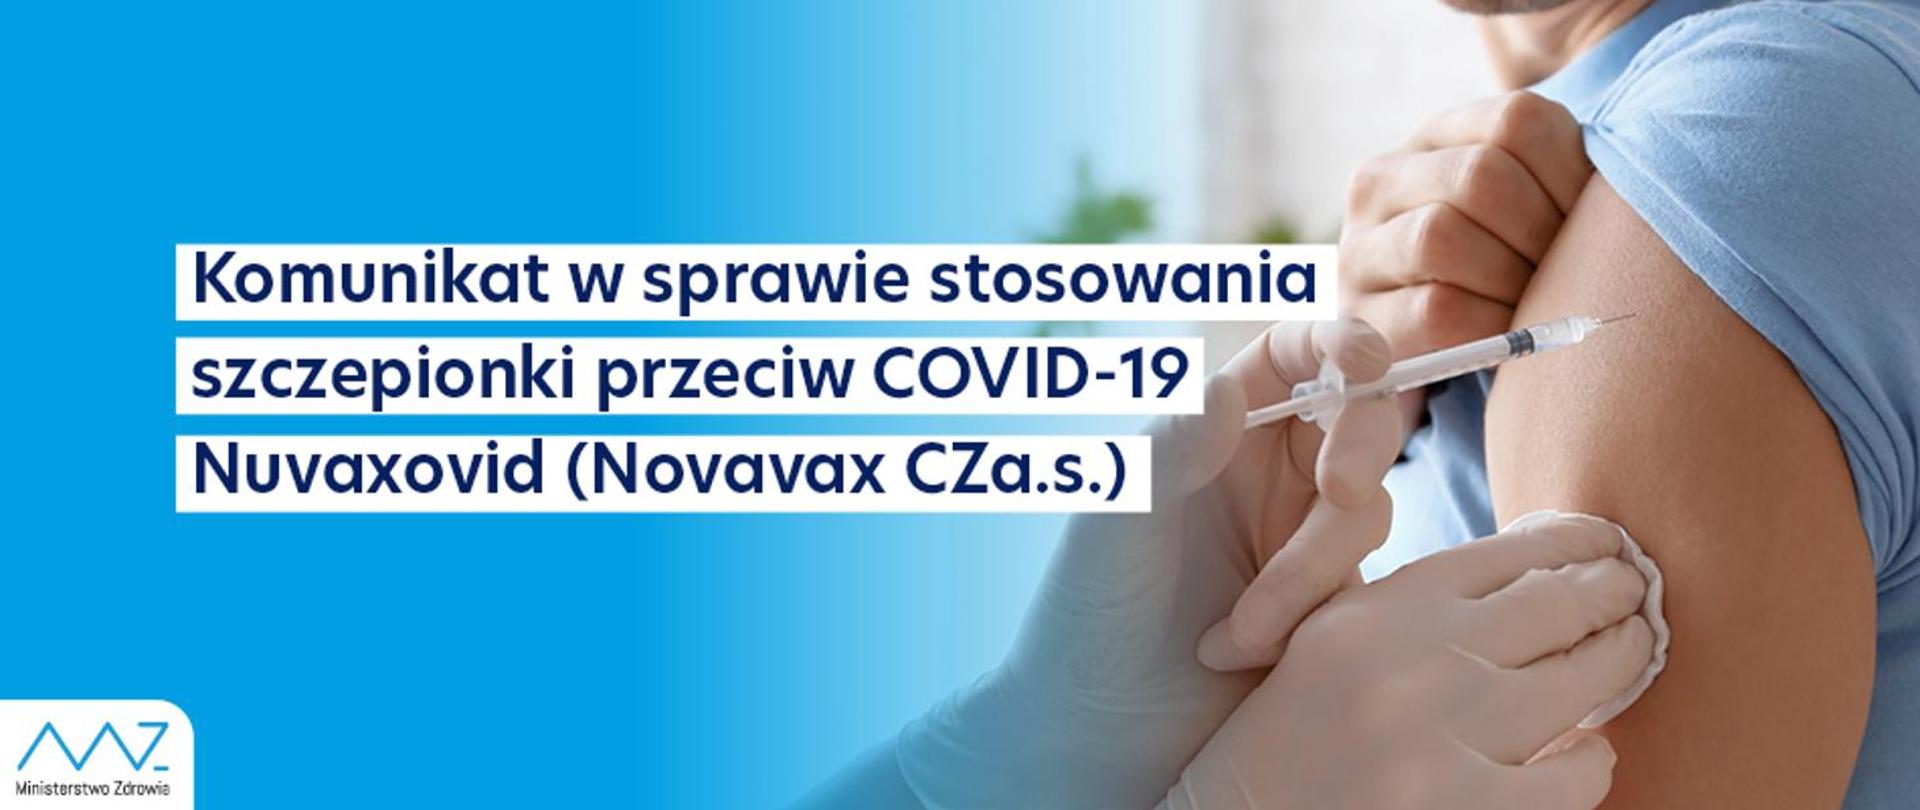 Komunikat nr 22 Ministra Zdrowia w sprawie stosowania szczepionki przeciw Covid-19 Nuvaxovid (Novavax CZa.s.)